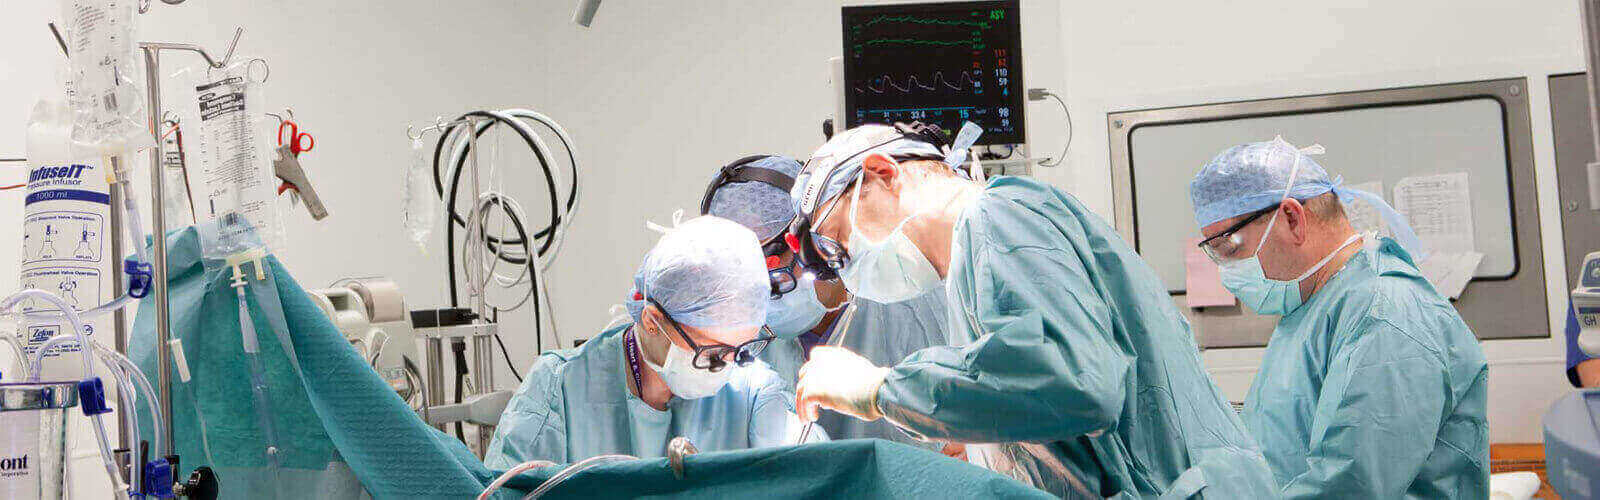 Heart Surgery Or Cardiac Surgery in Madagascar